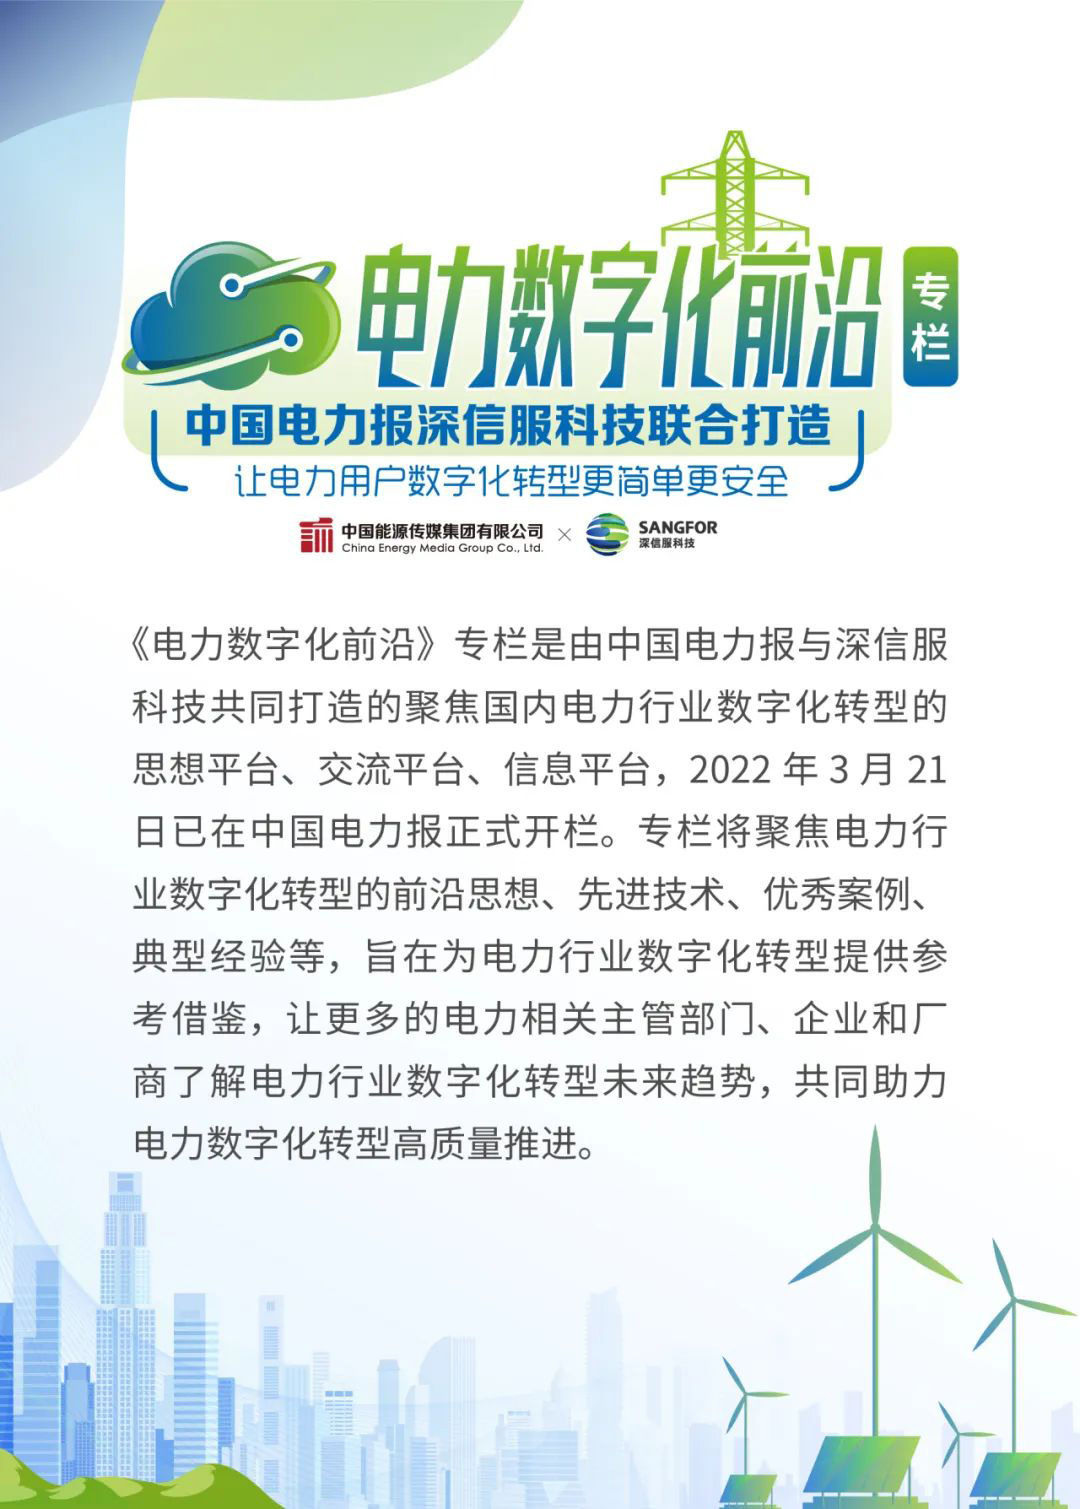 华能澜沧江水电加强网络安全运营体系建设